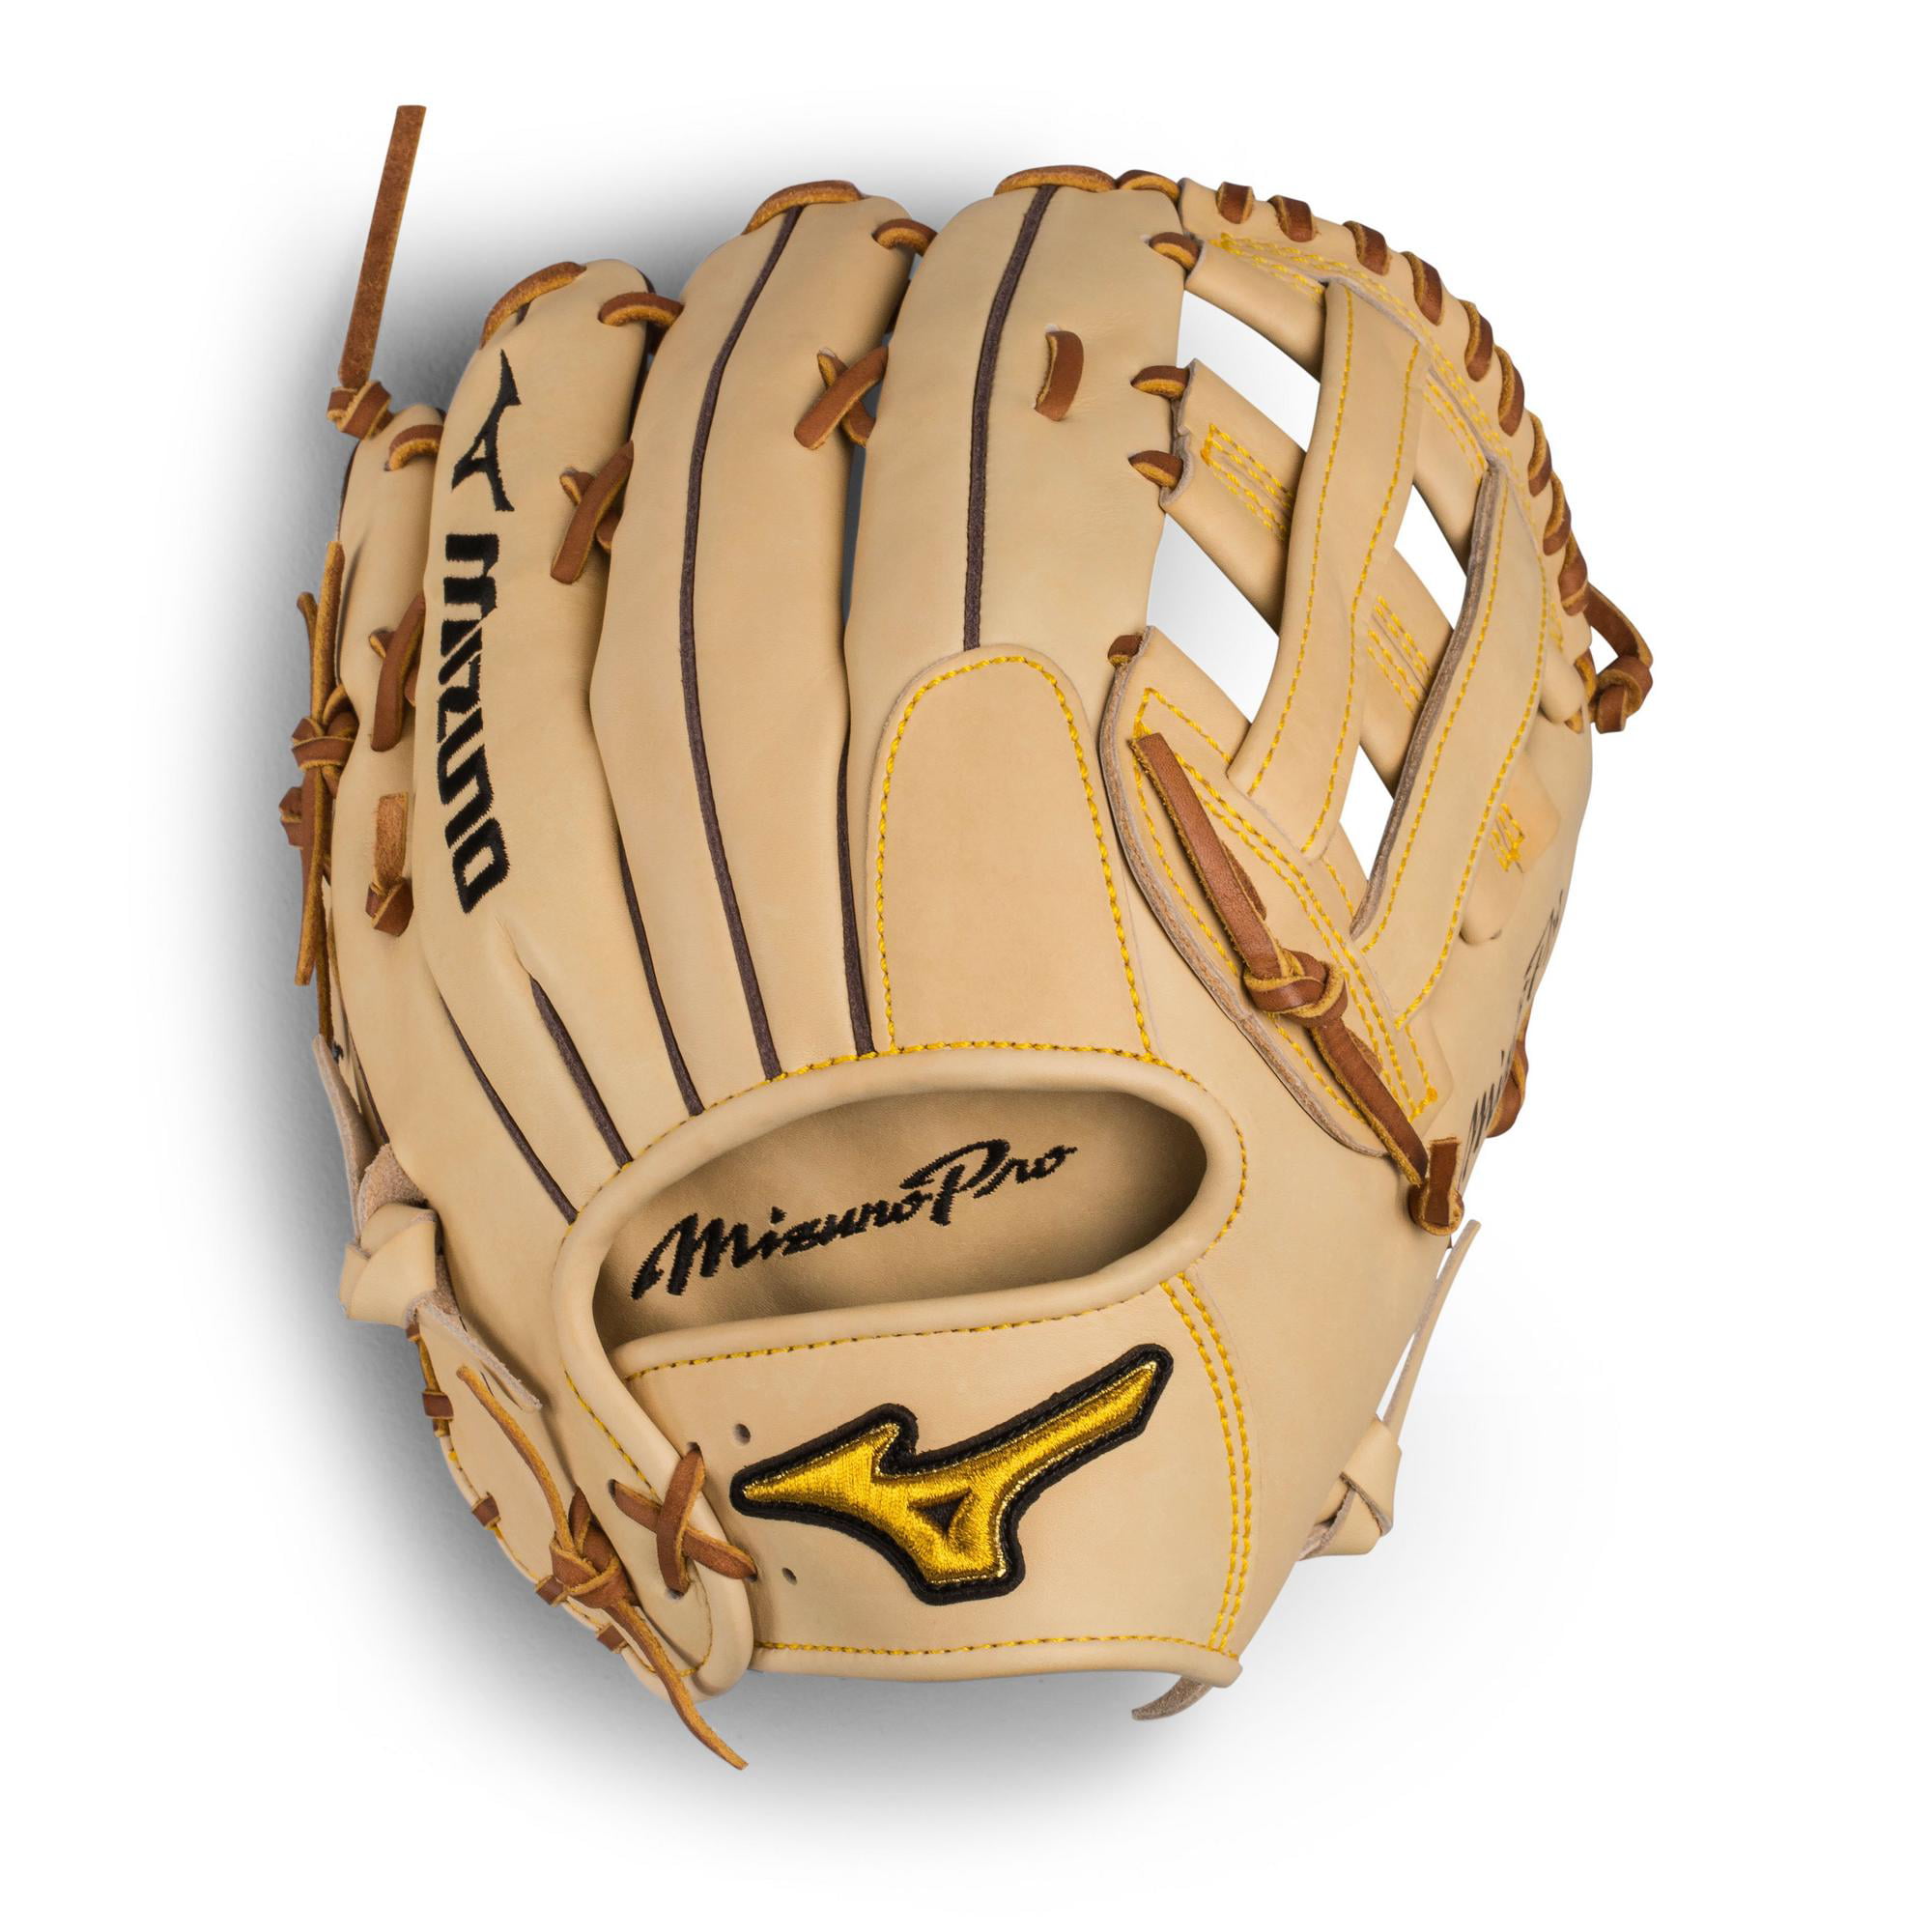 Mizuno Pro Outfield Baseball Glove 12 